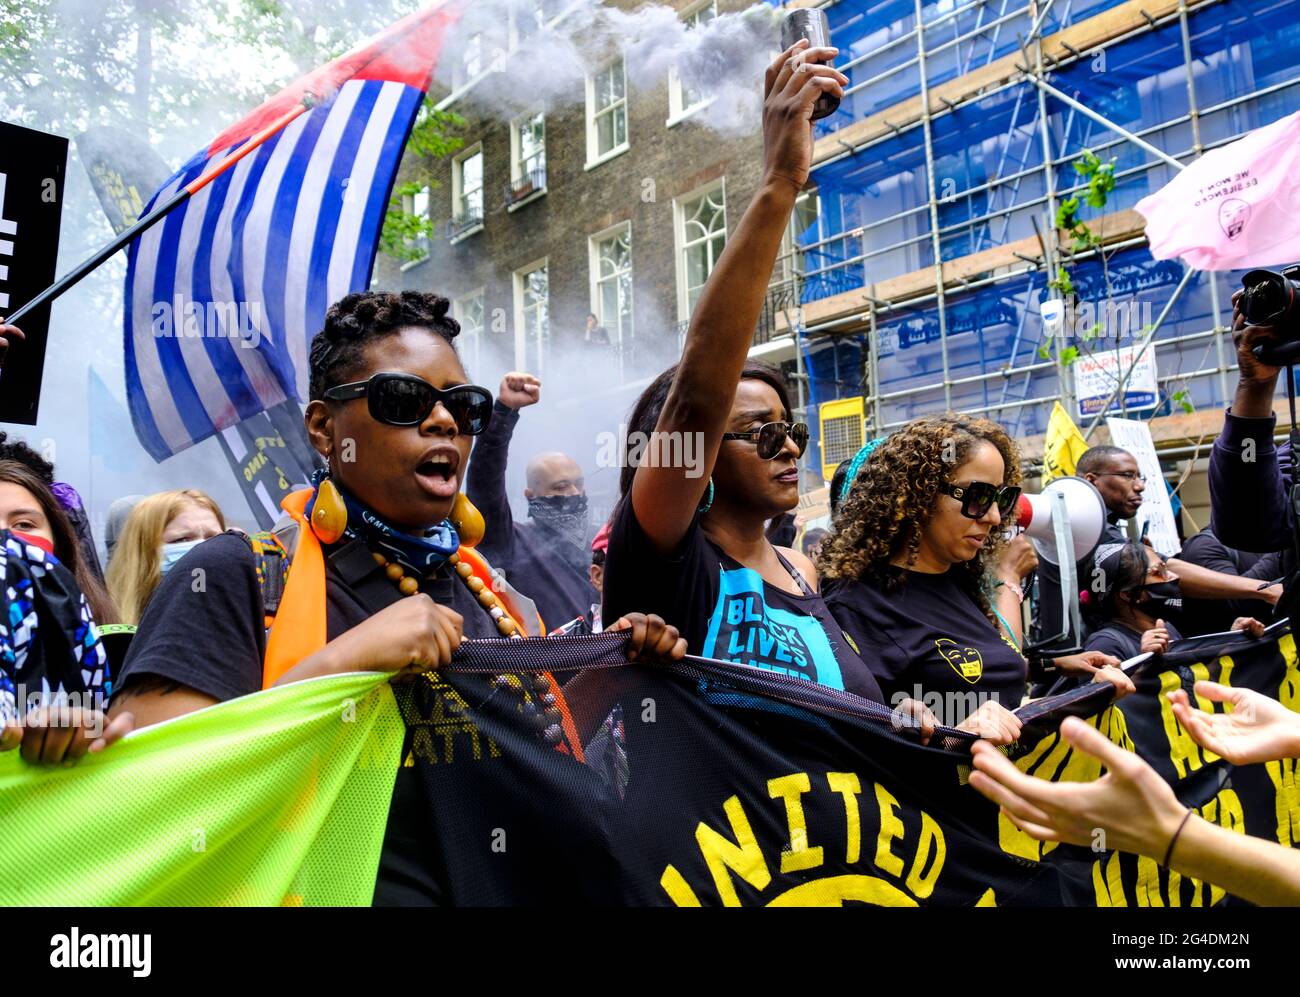 Las vidas negras son objeto de protestas a lo largo de la manifestación de Kill the Bill, dirigida por la rama británica de Black Lives Matter, que lucha específicamente contra el uso del poder policial como medio de silenciar a las voces negras, en respuesta a los recientes asesinatos de personas negras por parte de la policía. Foto de stock